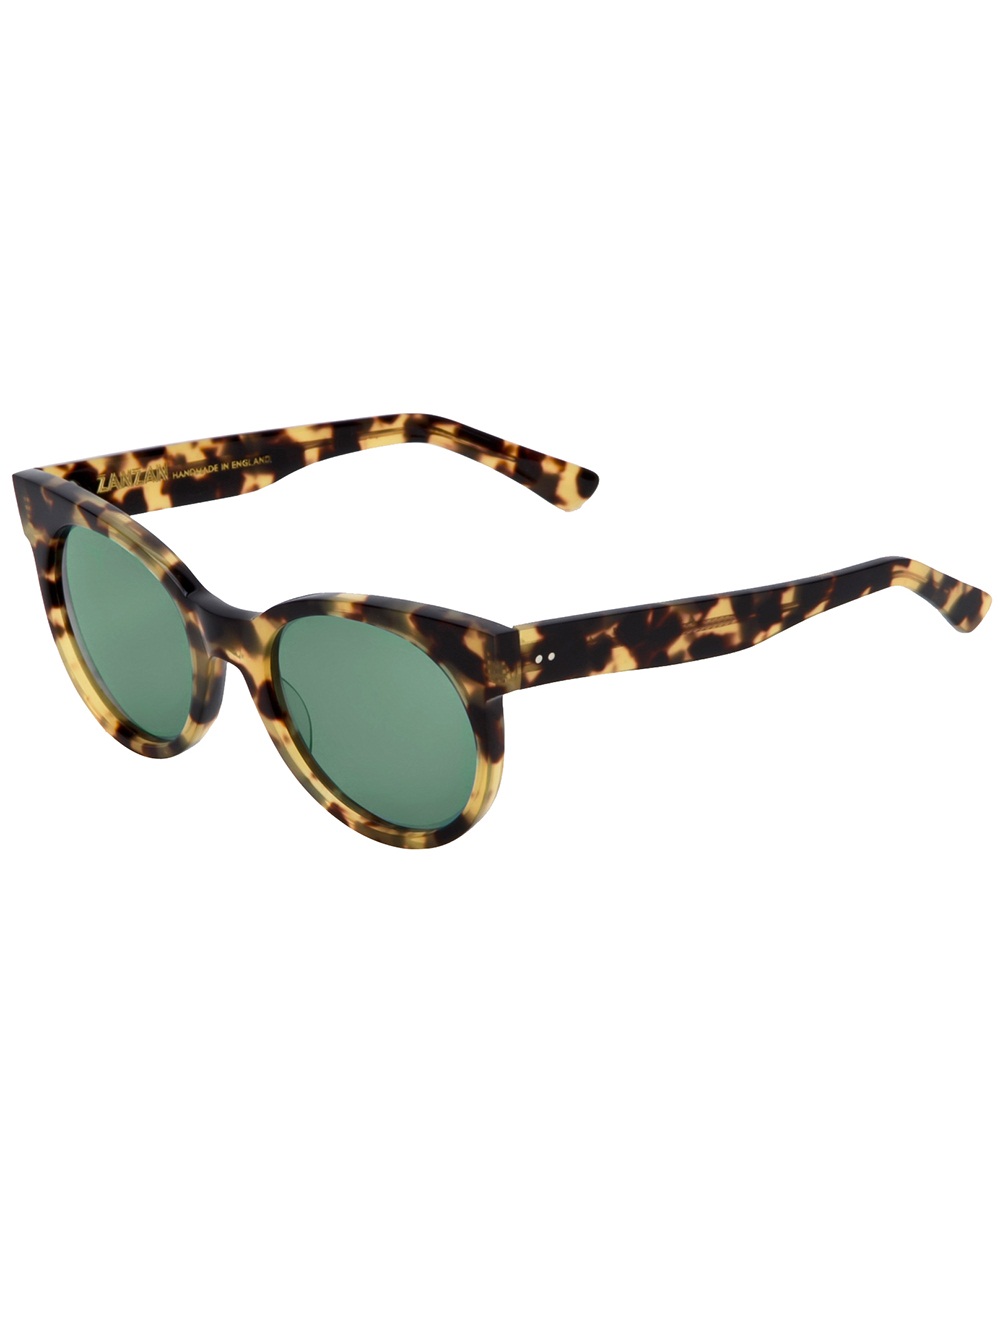 Óculos de sol Zanzan - R$1560